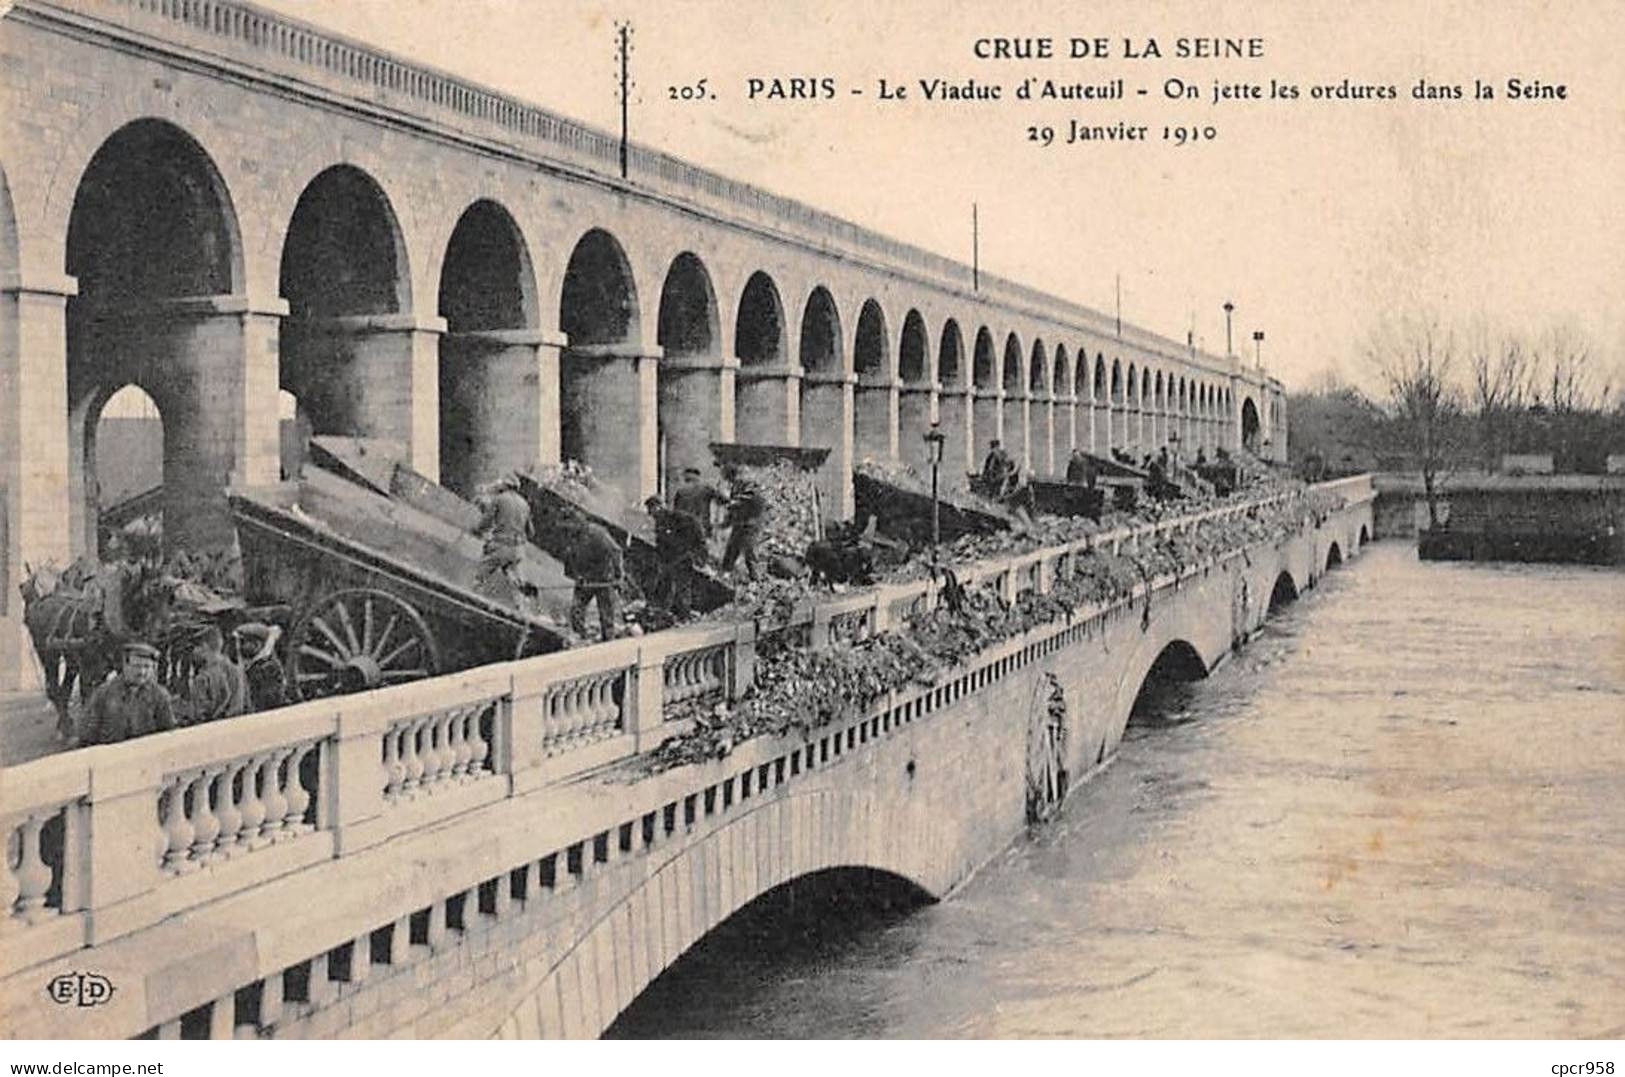 75 - PARIS - SAN55648 - Le Viaduc D'Auteuil - On Jette Les Ordure Dans La Seine - 29 Janvier 1910 - Crue De La Seine - Inondations De 1910